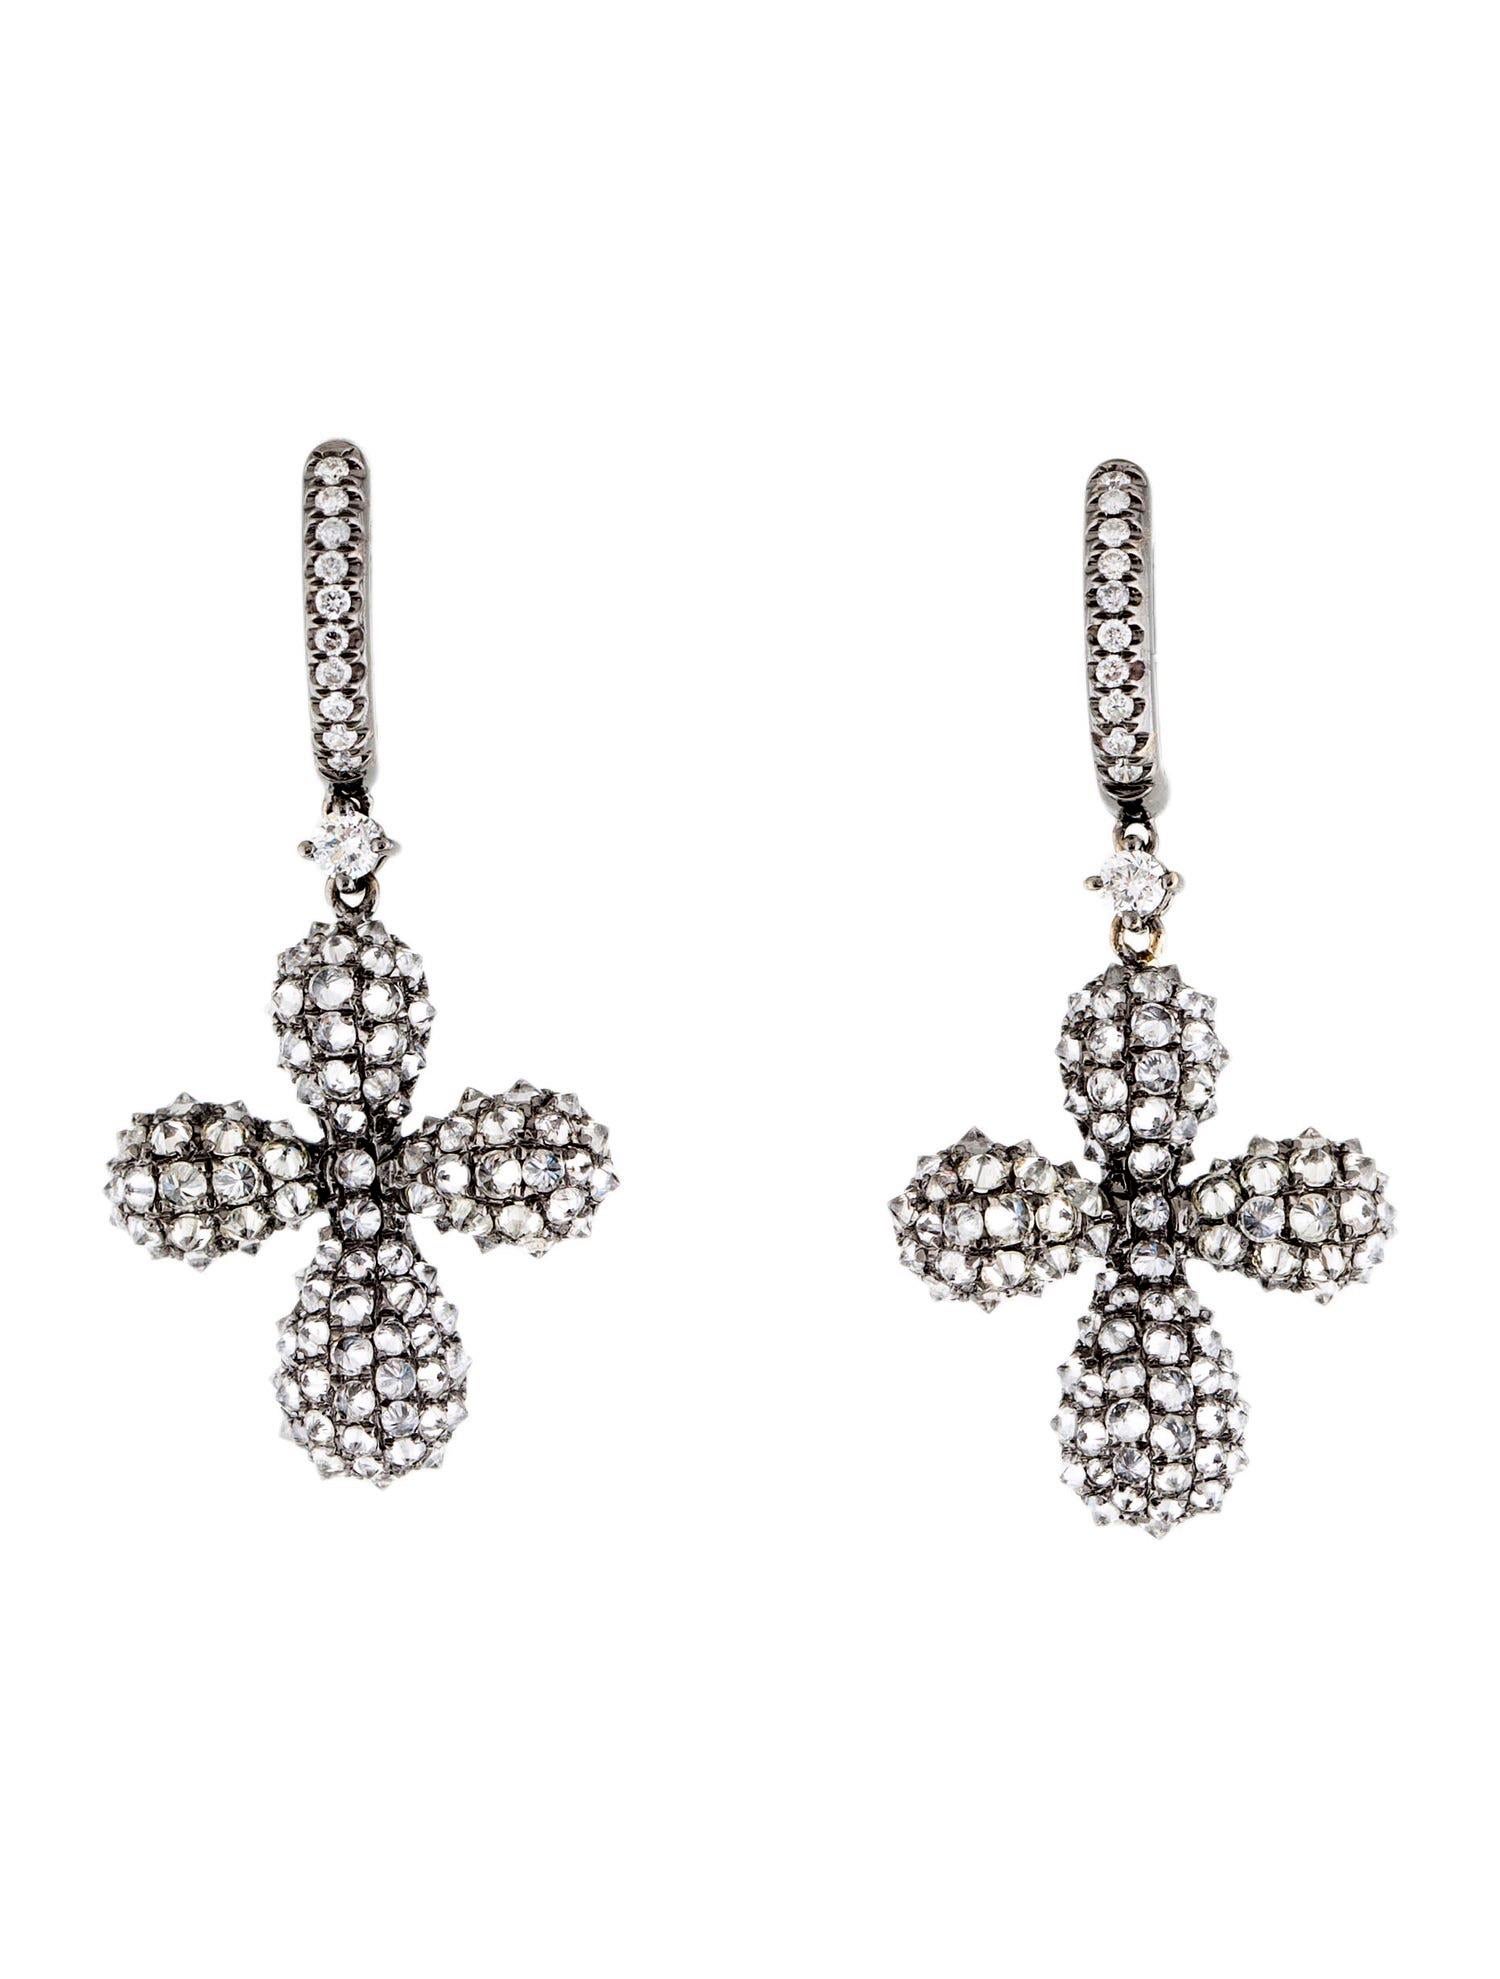 PIRANESI 18kt Black Gold 2.31 tcw Diamond Cross Drop Earrings For Sale 2